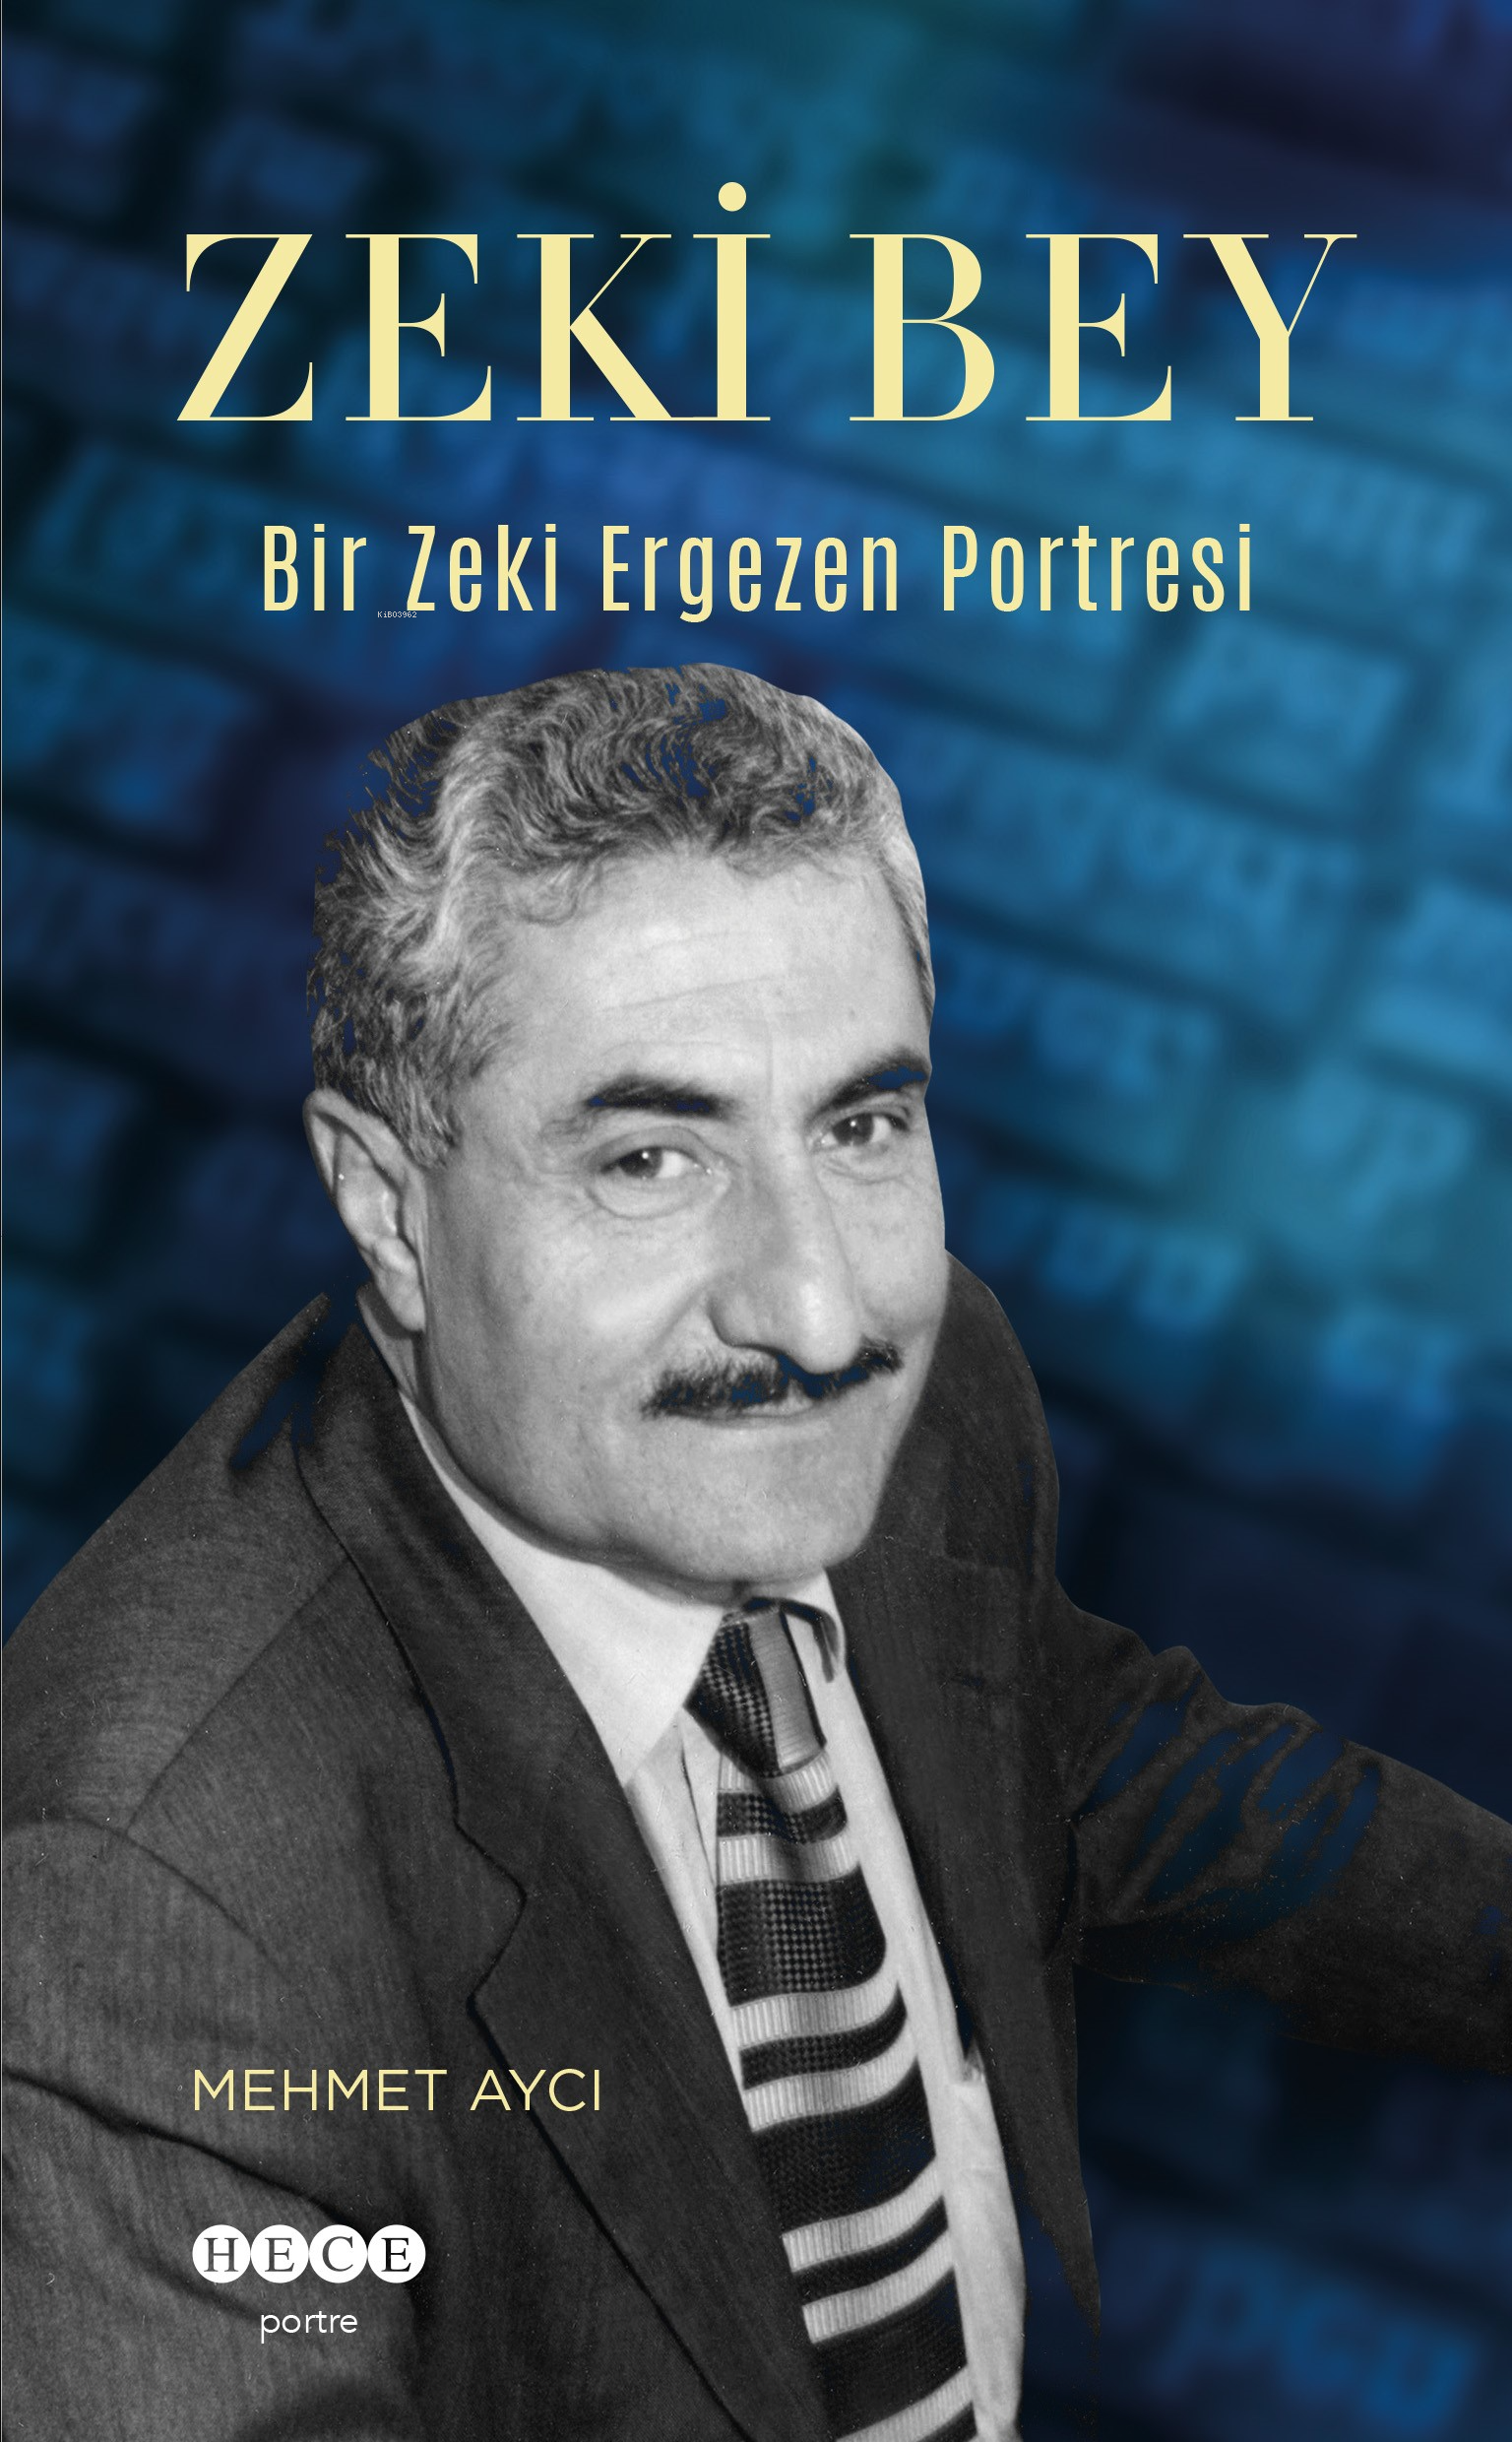 Zeki Bey;Bir Zeki Ergezen Portresi